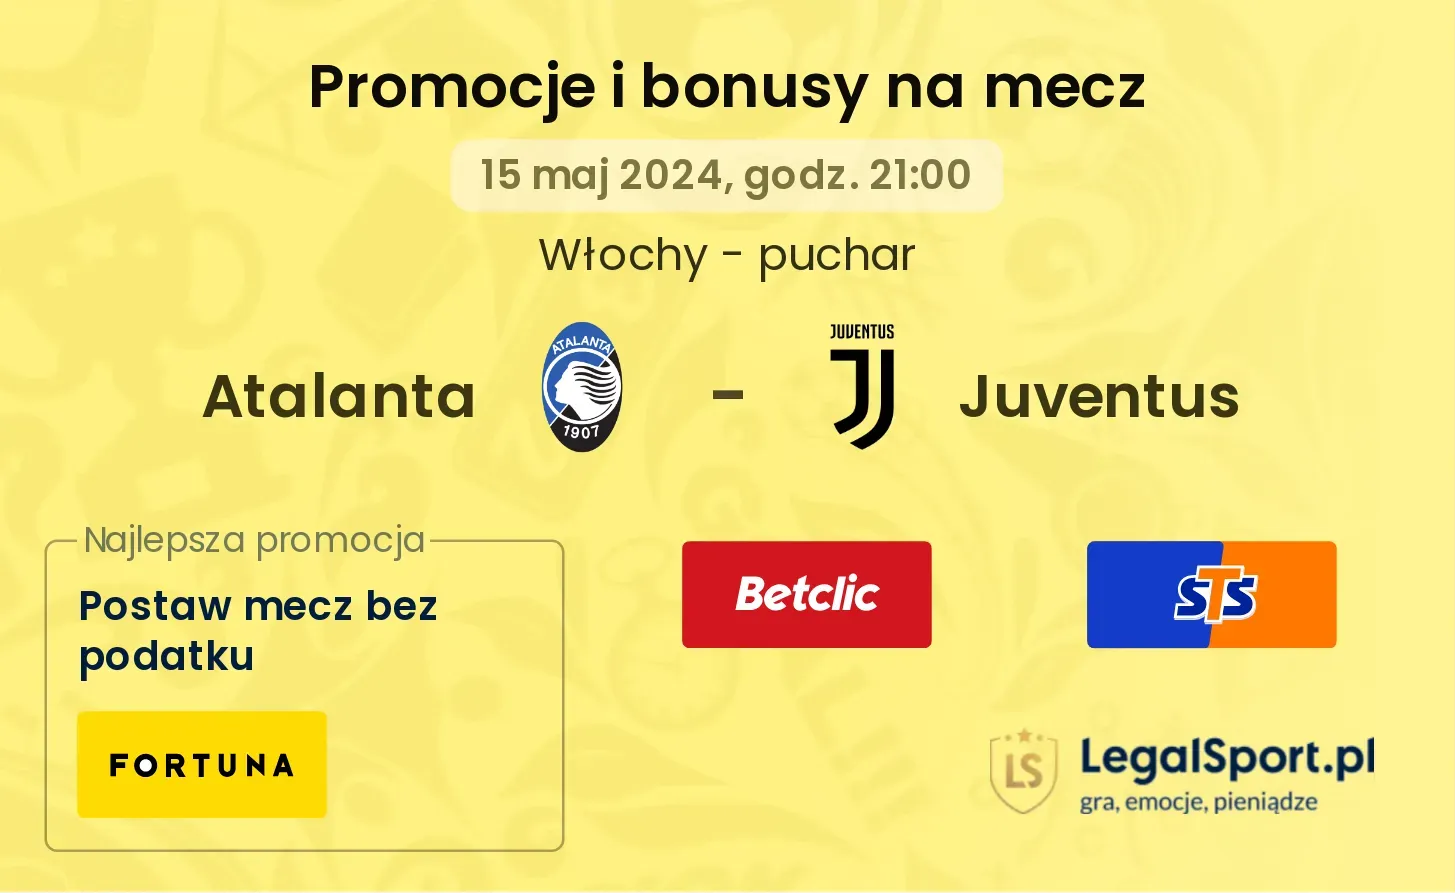 Atalanta - Juventus promocje bonusy na mecz